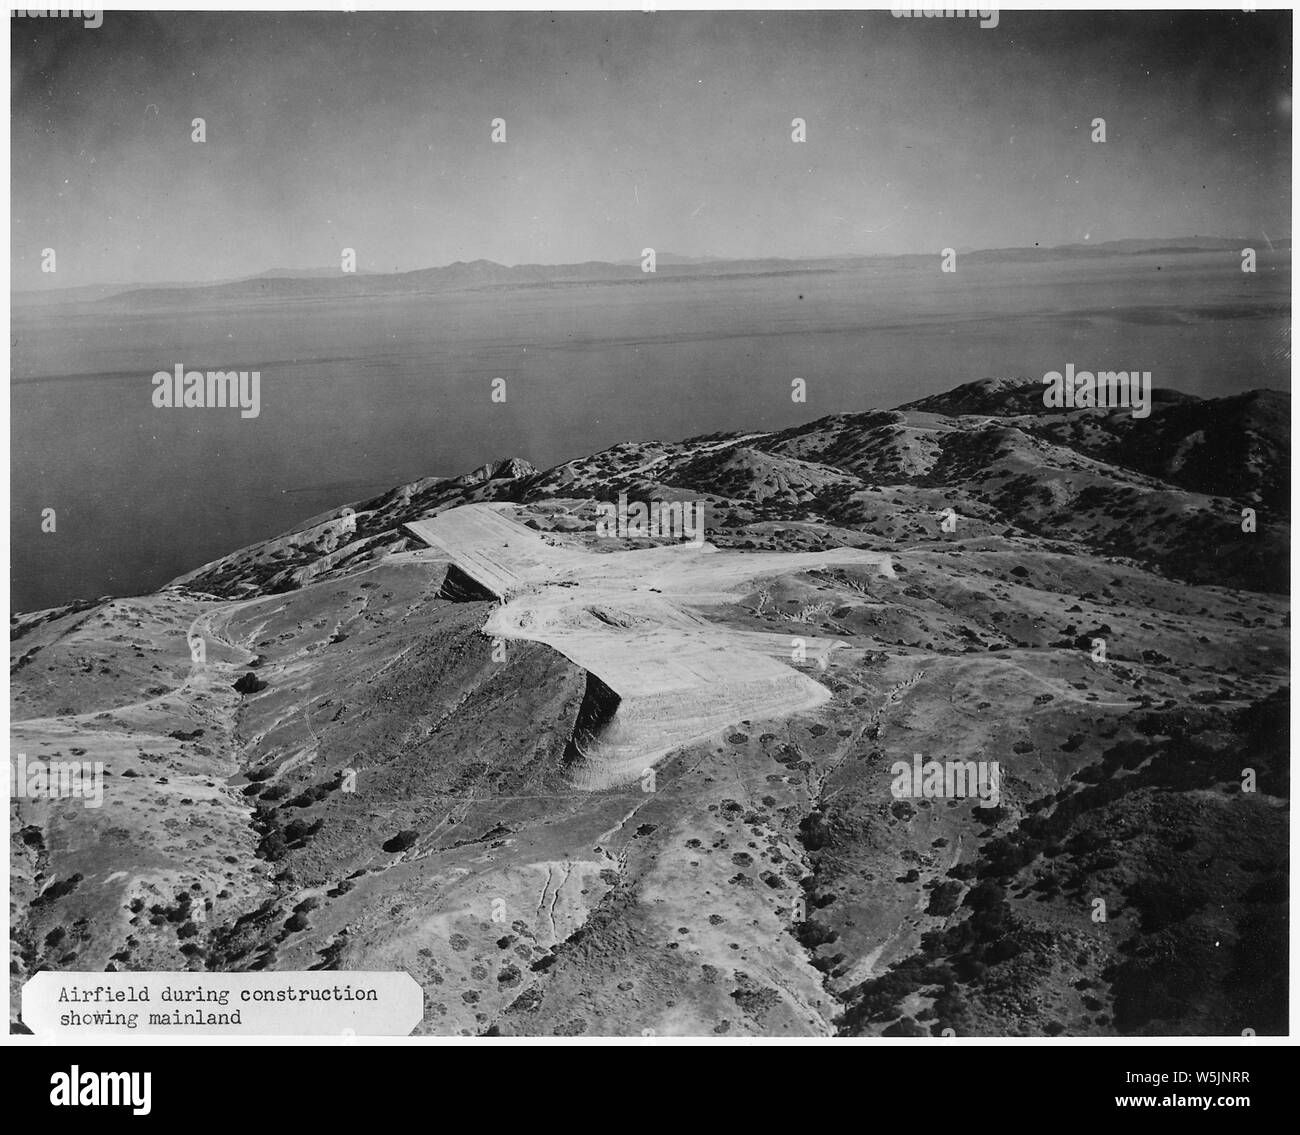 [Luftaufnahme Flugplatz während der Bauphase auf Catalina Island übersicht Festland im Hintergrund.] Stockfoto